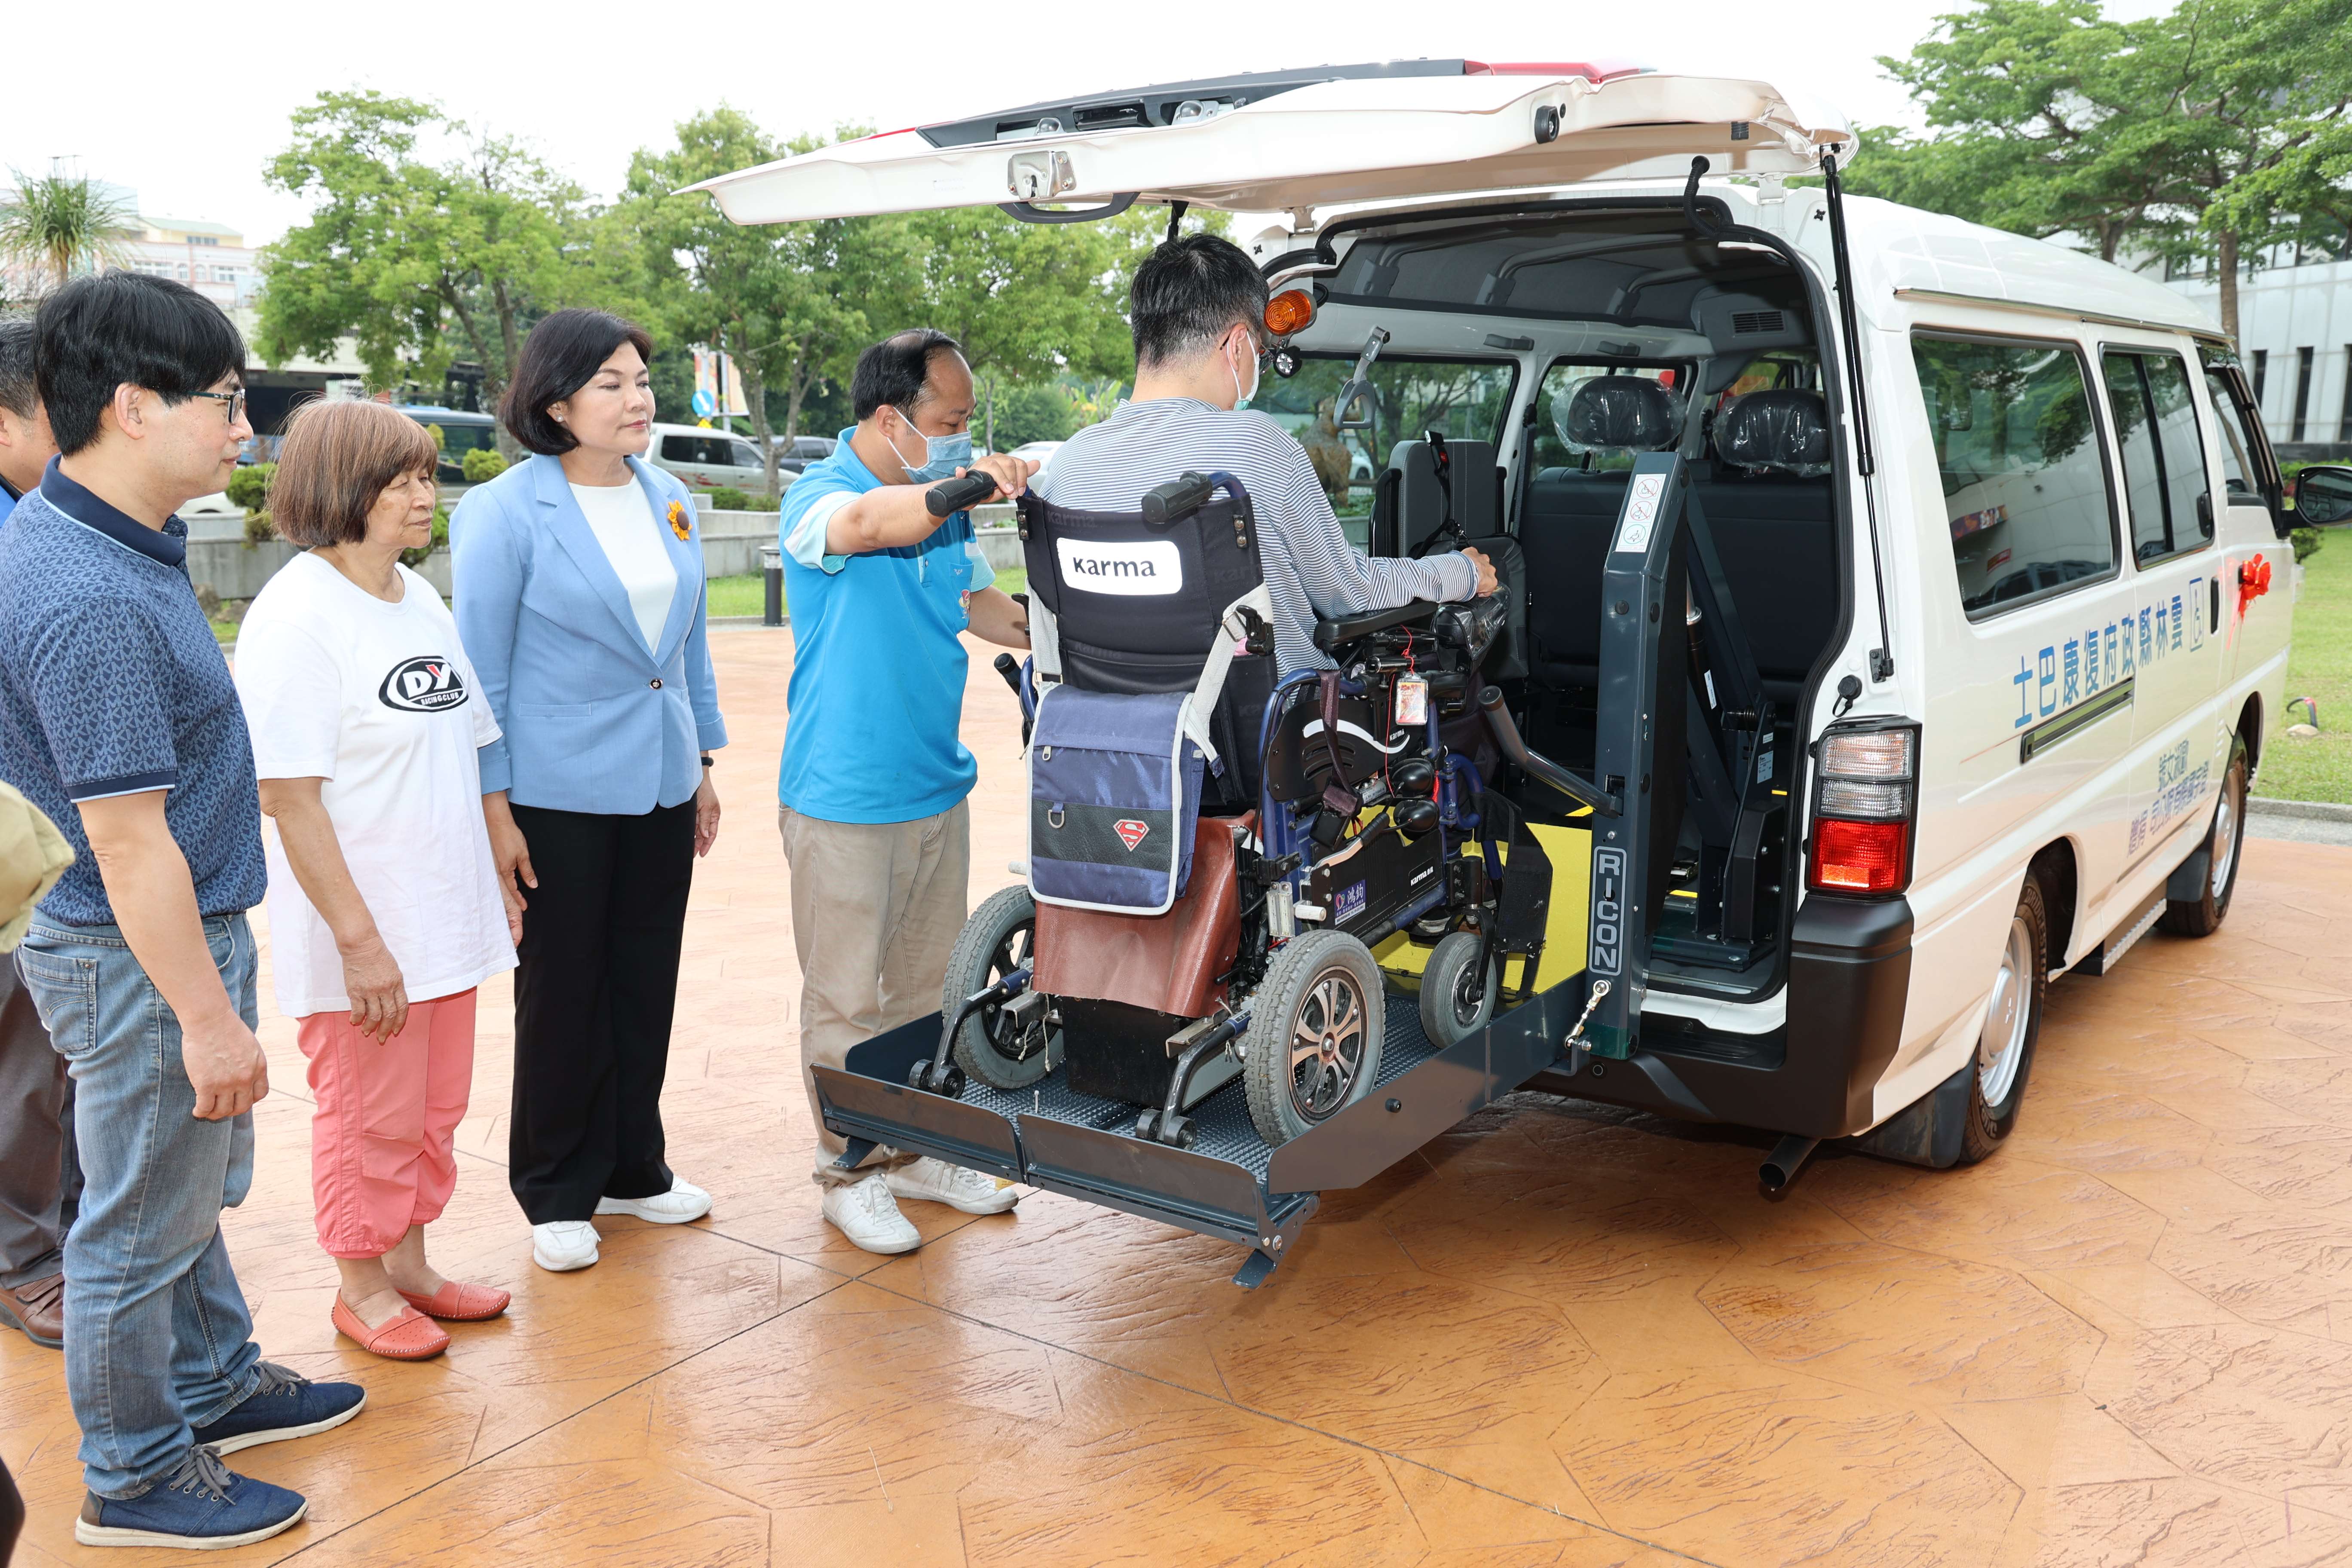 登宇國際有限公司此次捐贈雲林縣復康巴士 將用來服務更多雲林身心障礙朋友